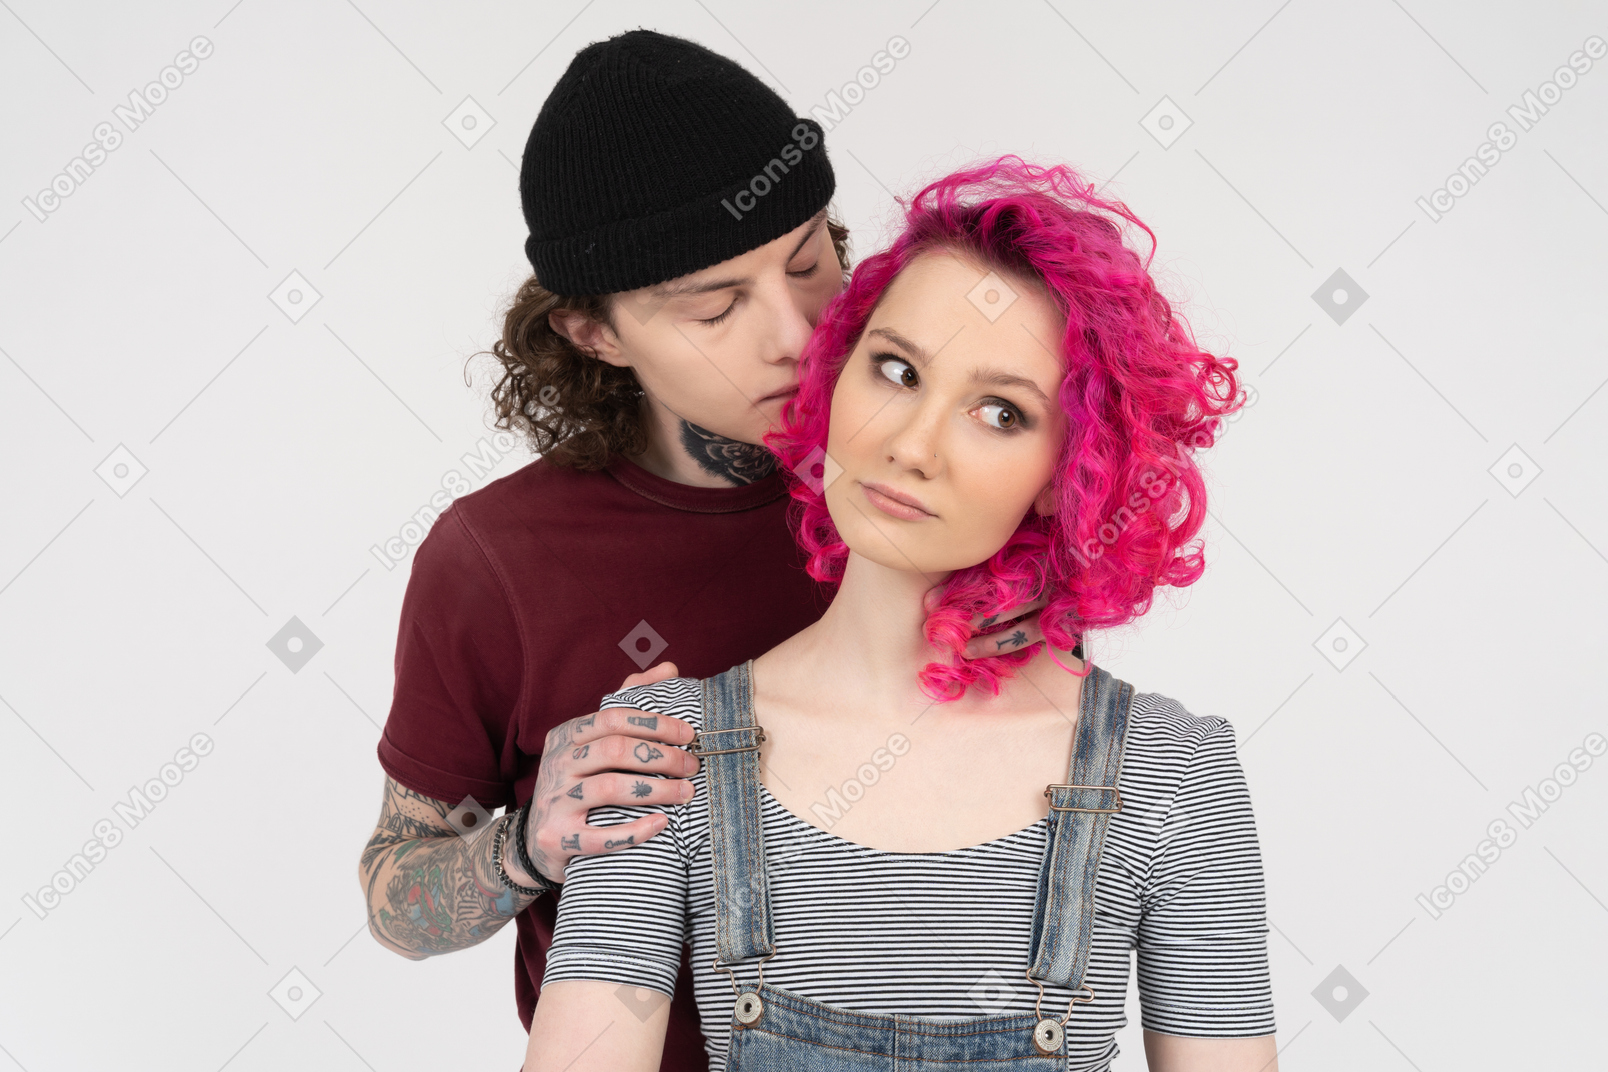 그의 여자 친구 뒤에 서있는 젊은 남자가 그녀의 뺨에 키스